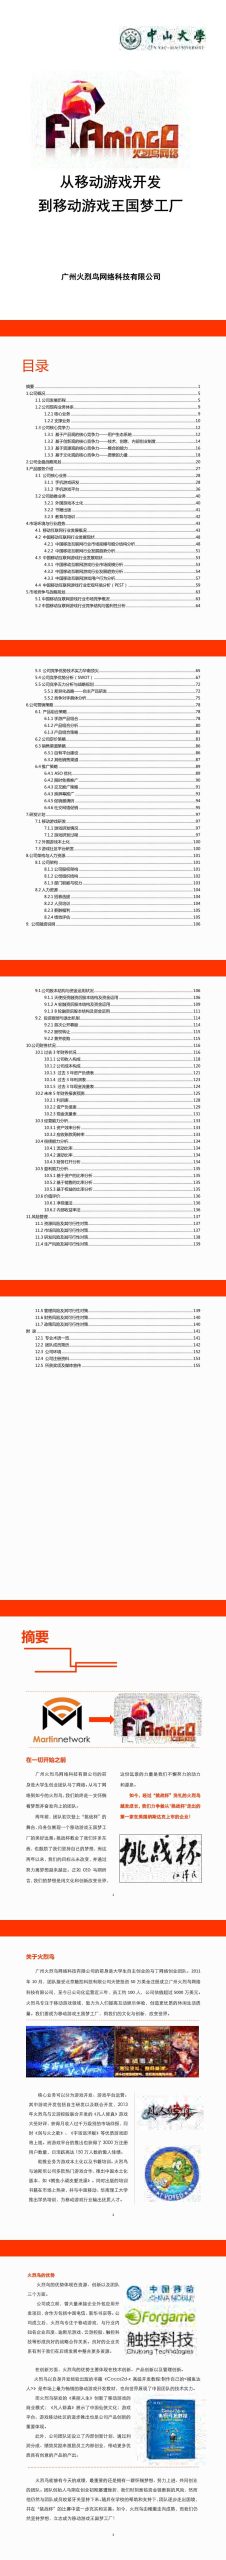 广州火烈鸟网络科技有限公司项目运营报告